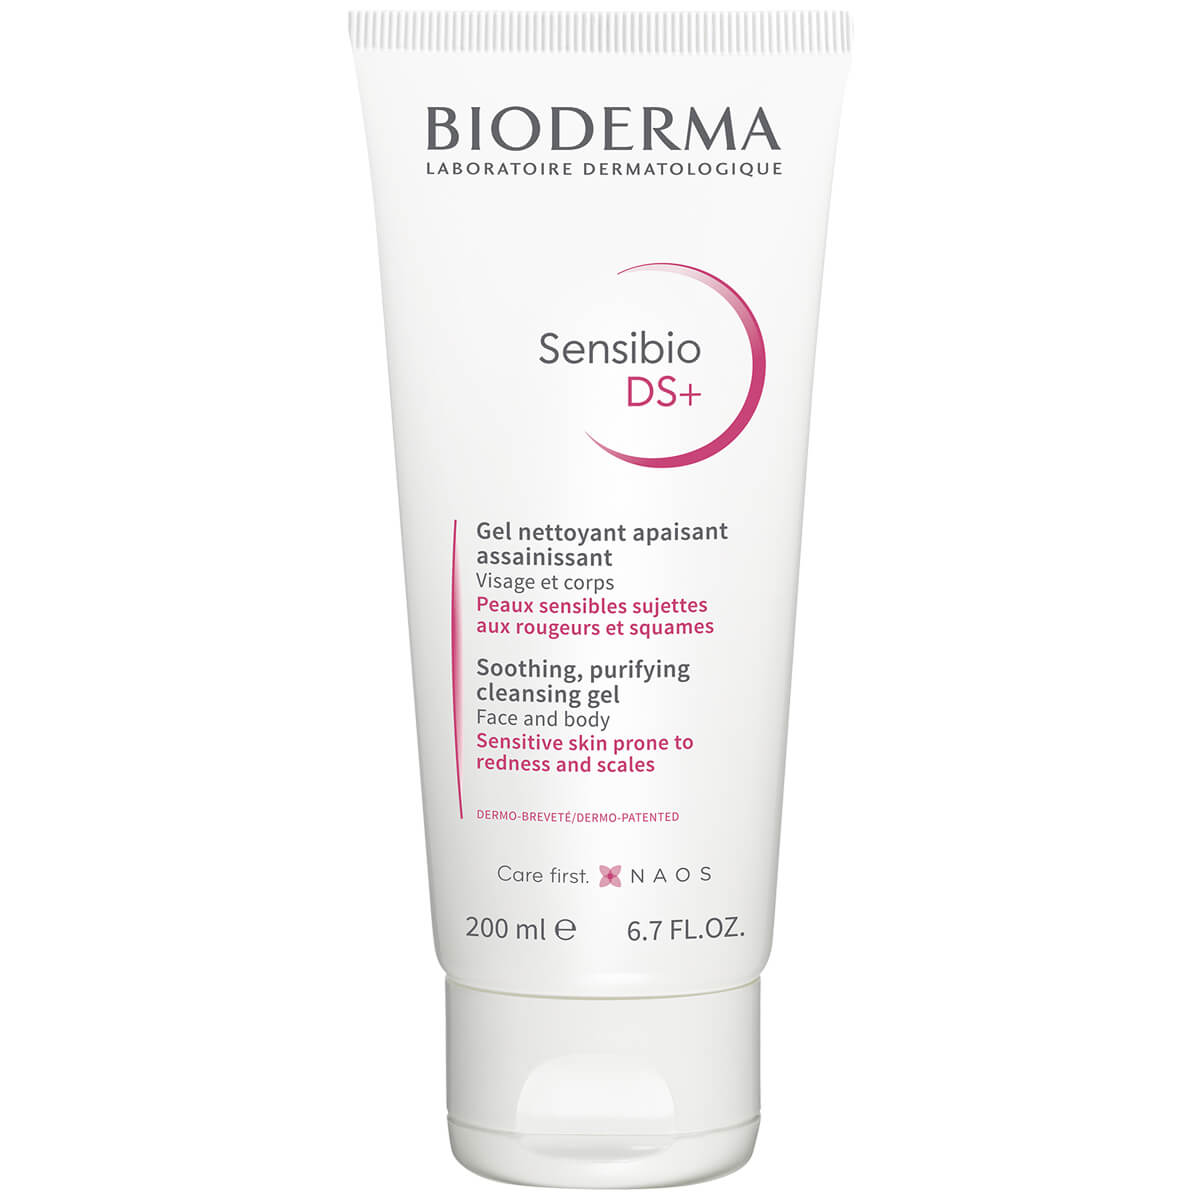 Sensibio DS+ очищающий гель для кожи с покраснениями и шелушениями, 200 мл, Bioderma